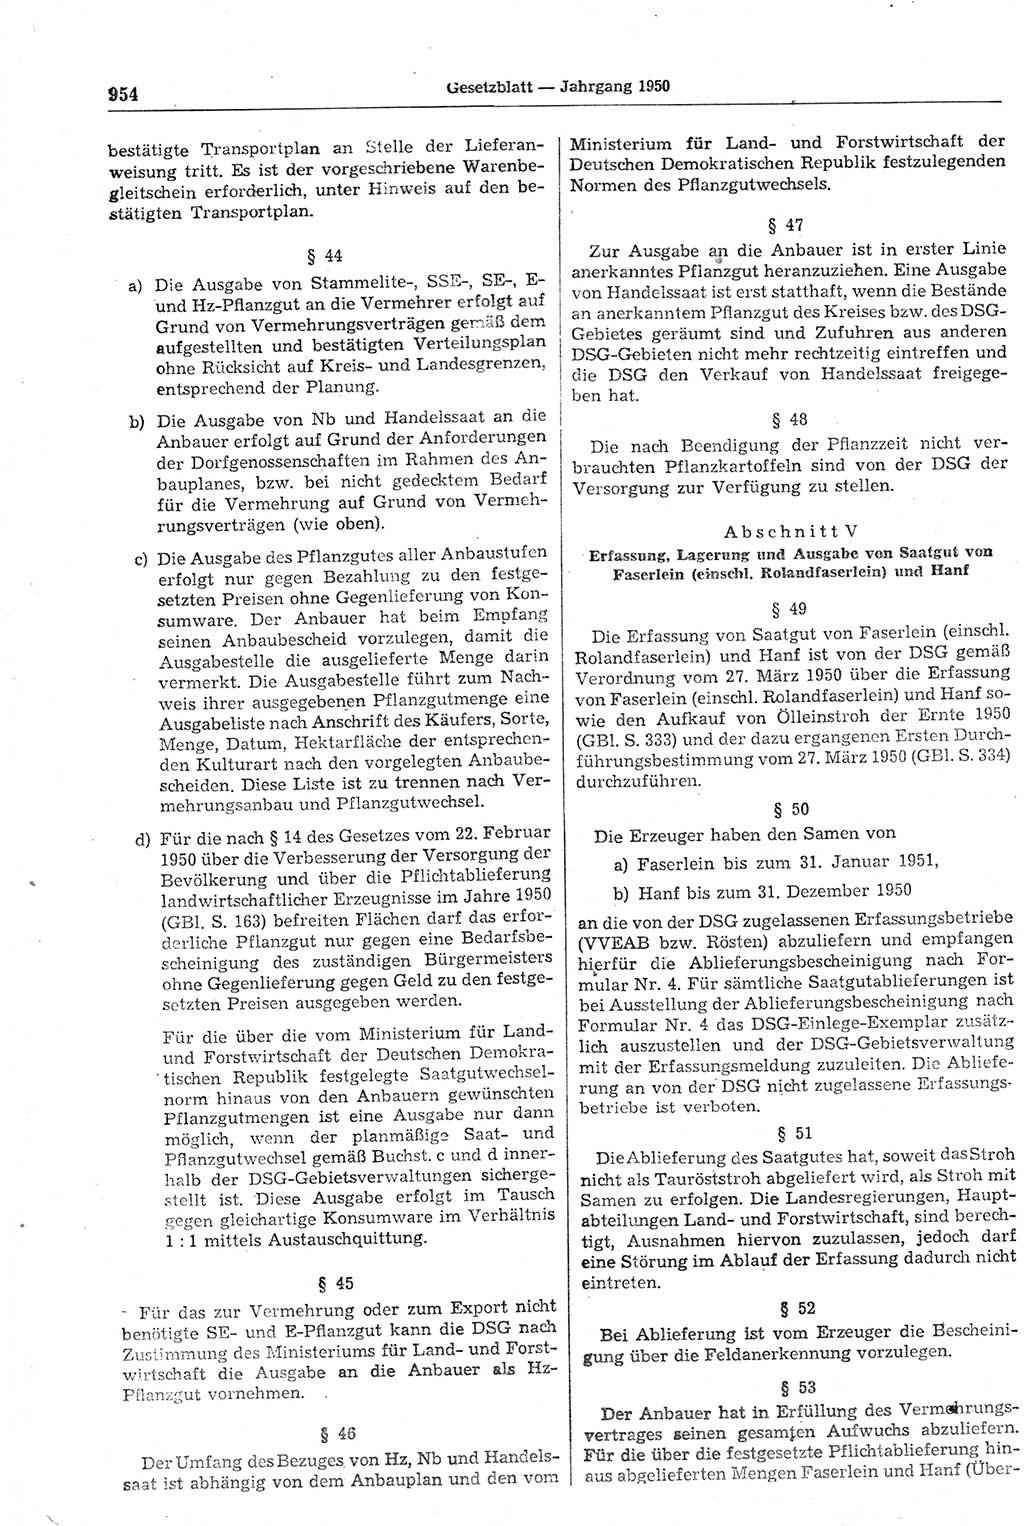 Gesetzblatt (GBl.) der Deutschen Demokratischen Republik (DDR) 1950, Seite 954 (GBl. DDR 1950, S. 954)